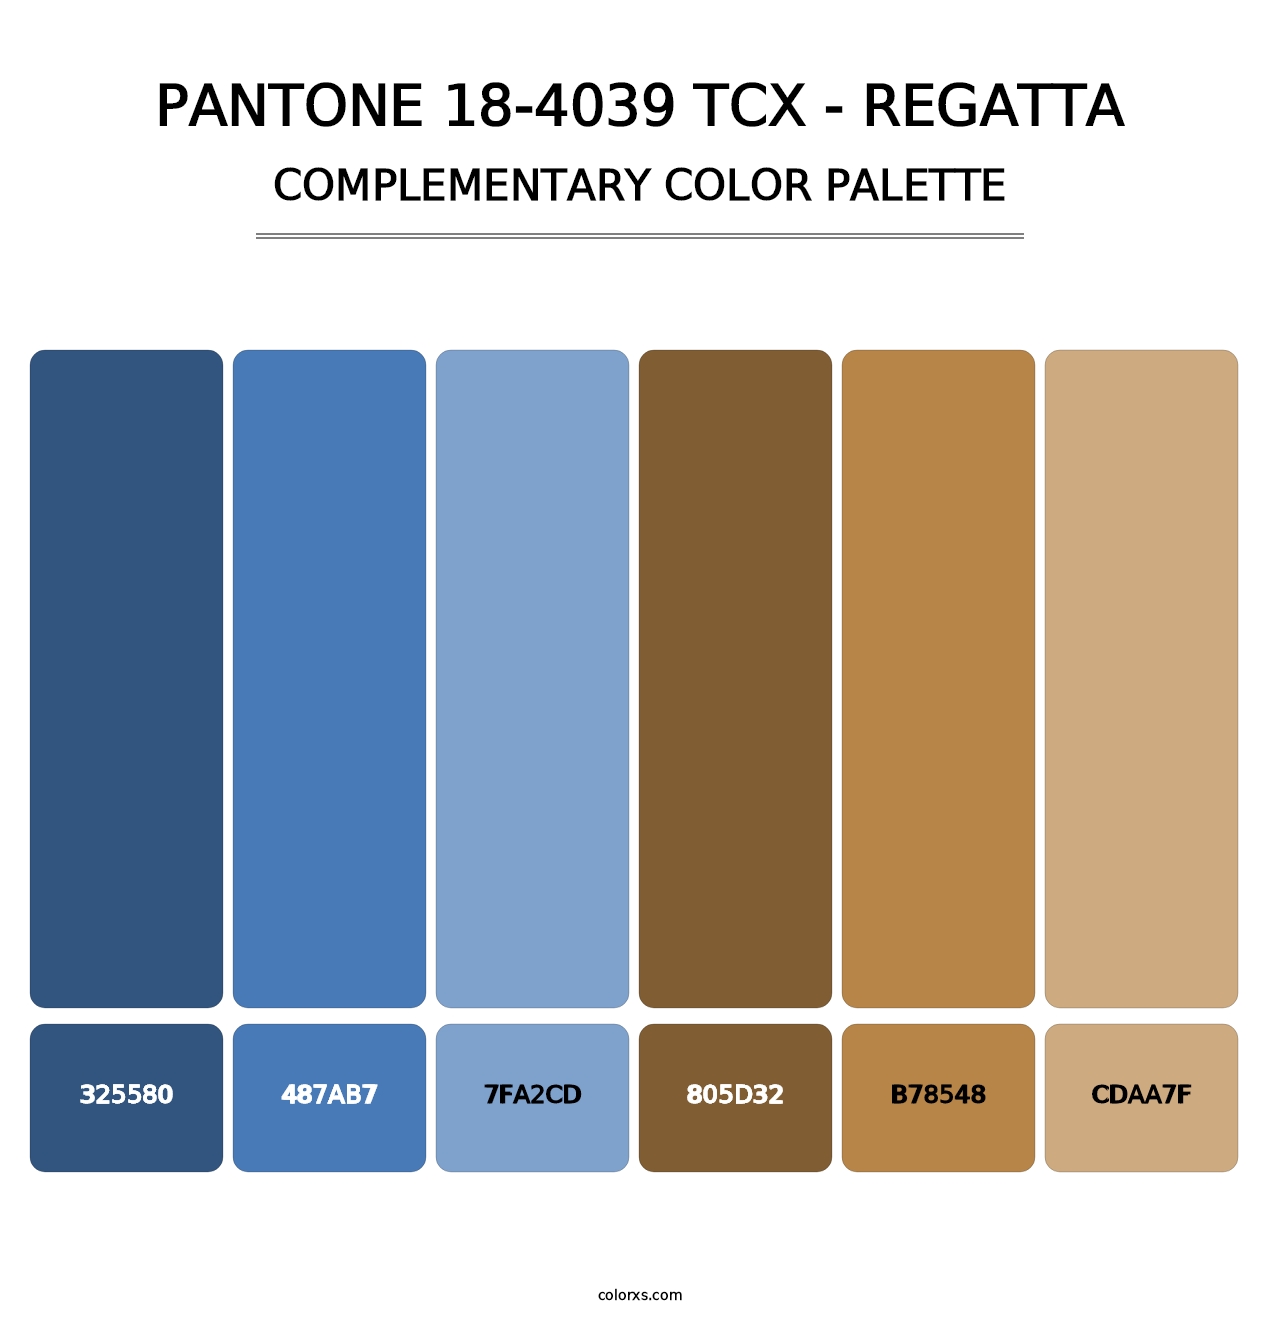 PANTONE 18-4039 TCX - Regatta - Complementary Color Palette